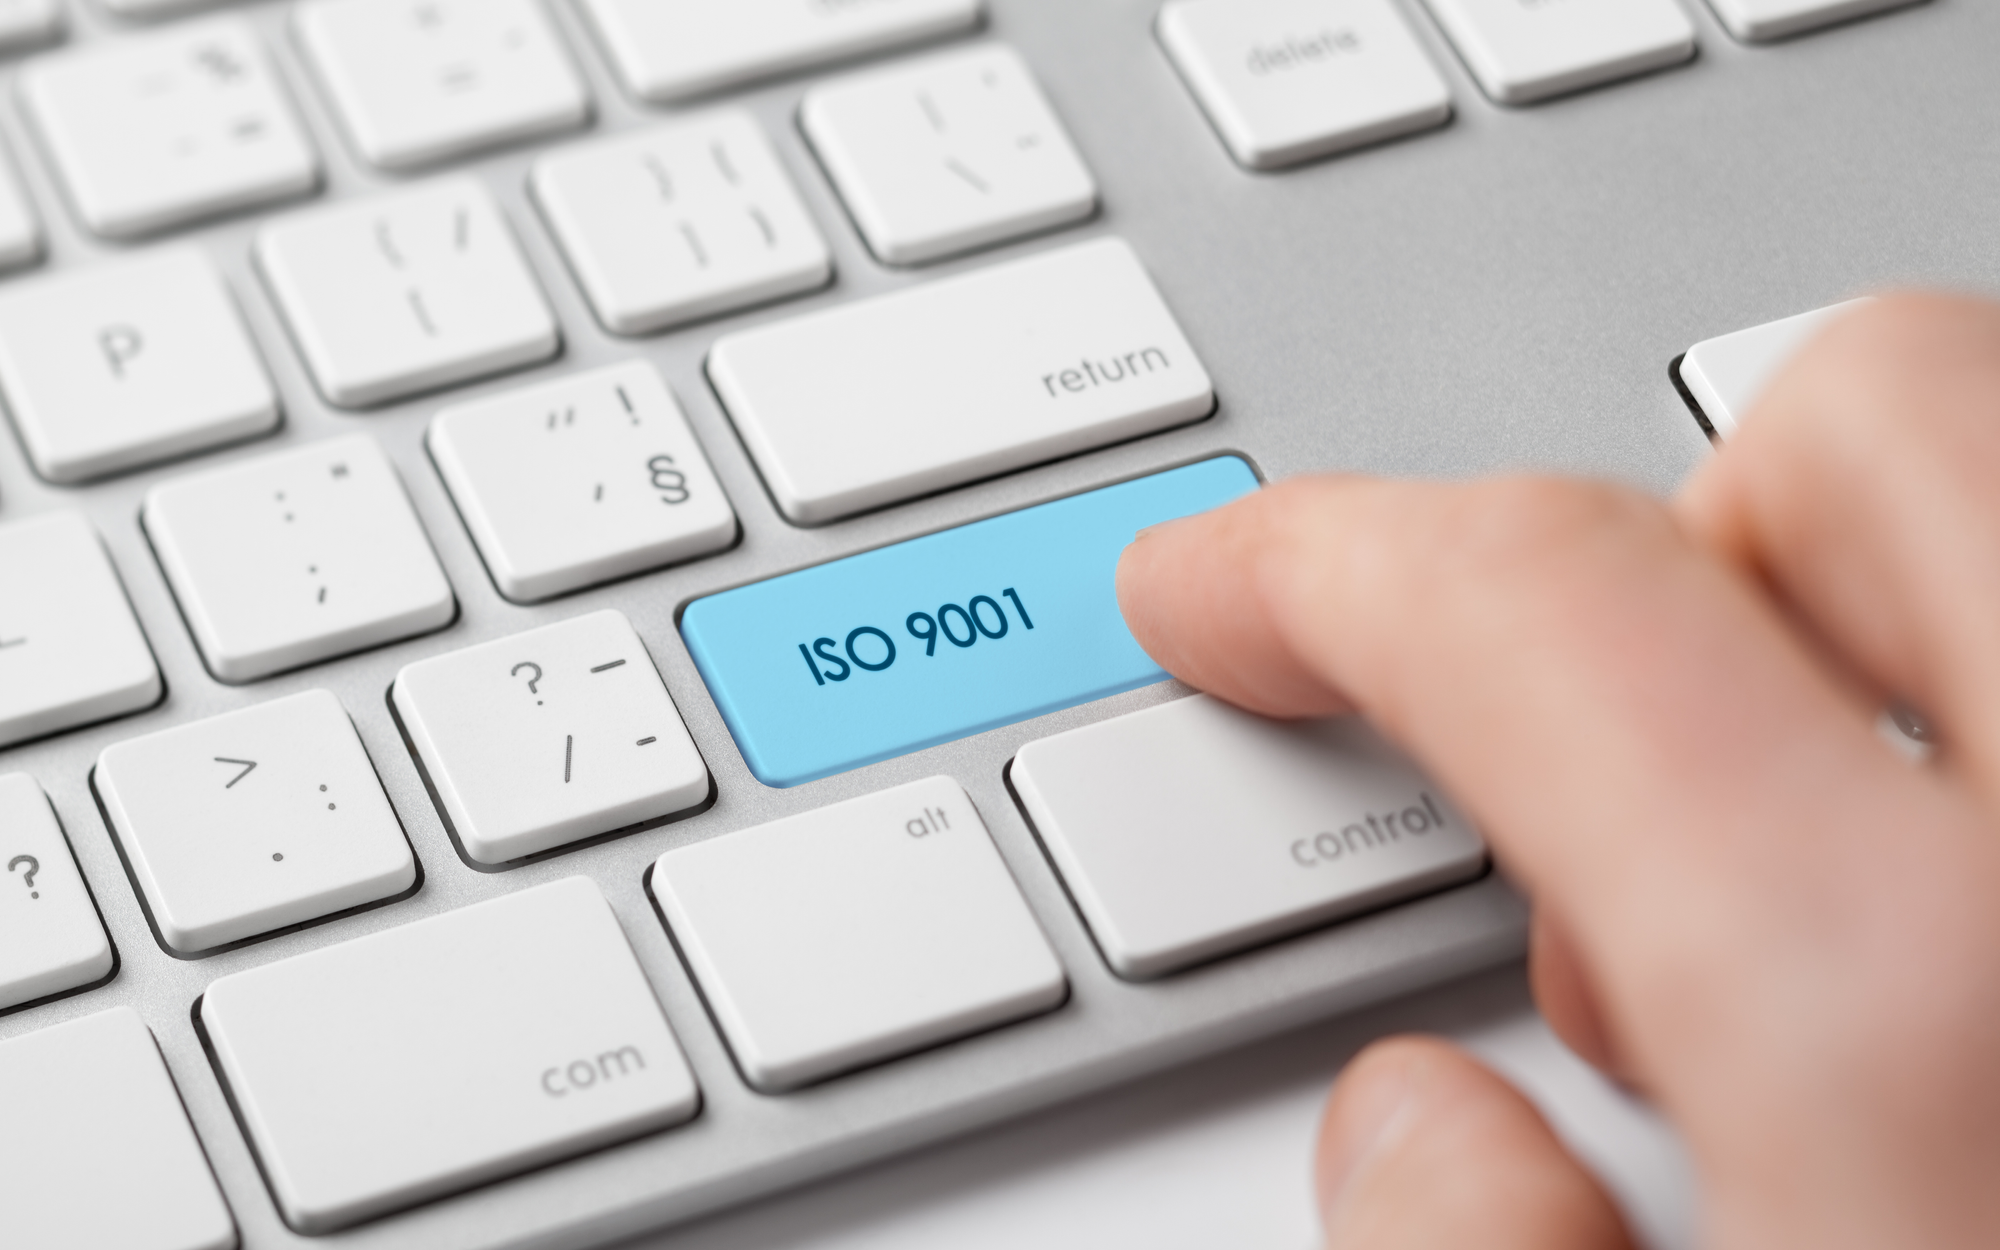 ISO 9001 keyboard